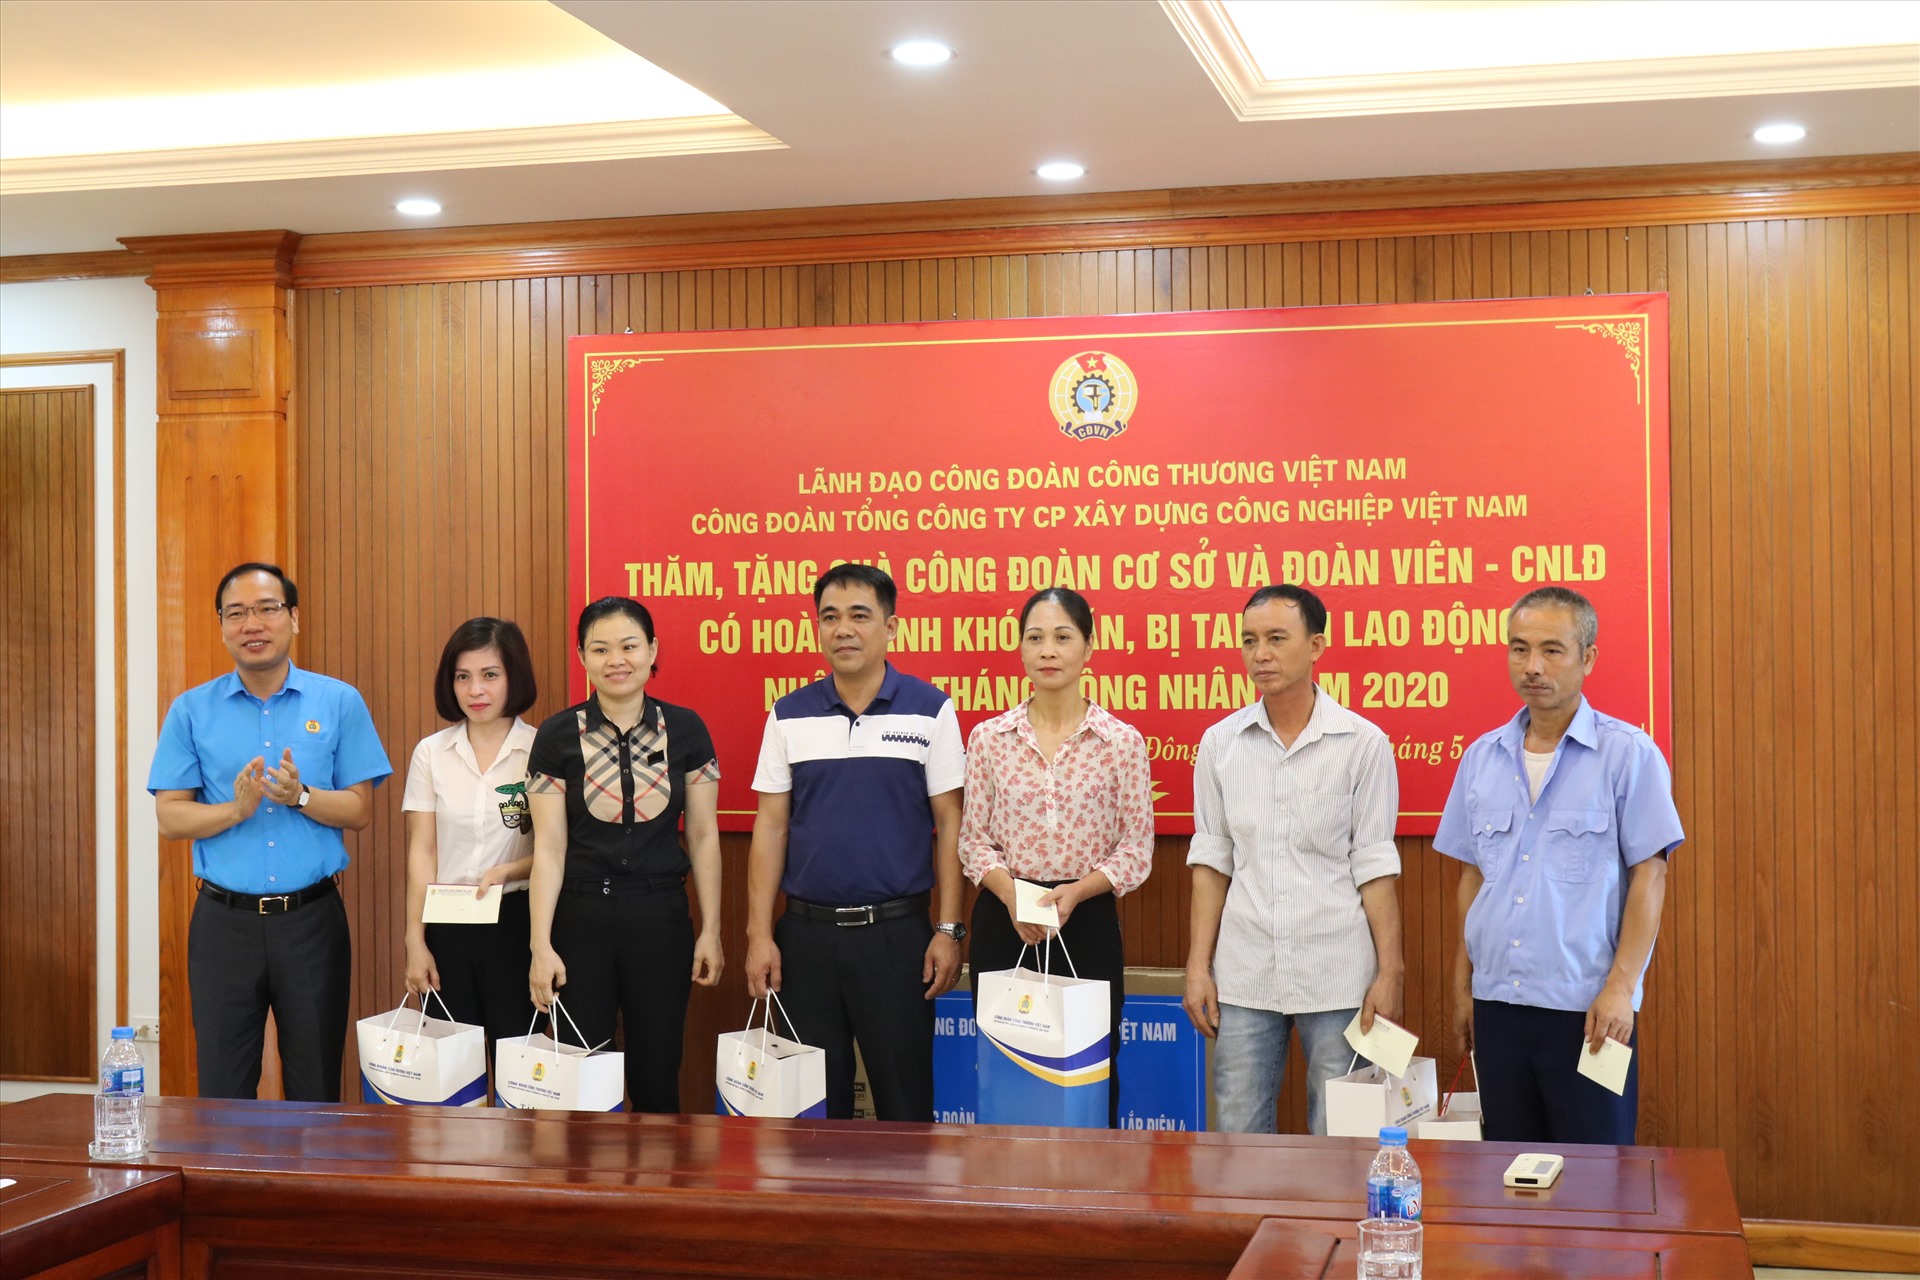 Đồng chí Trần Quang Huy (ngoài cùng bên trái) tặng quà đại diện người lao động Công ty TNHH MTV xây lắp điện 4. Ảnh: Thuỳ Linh